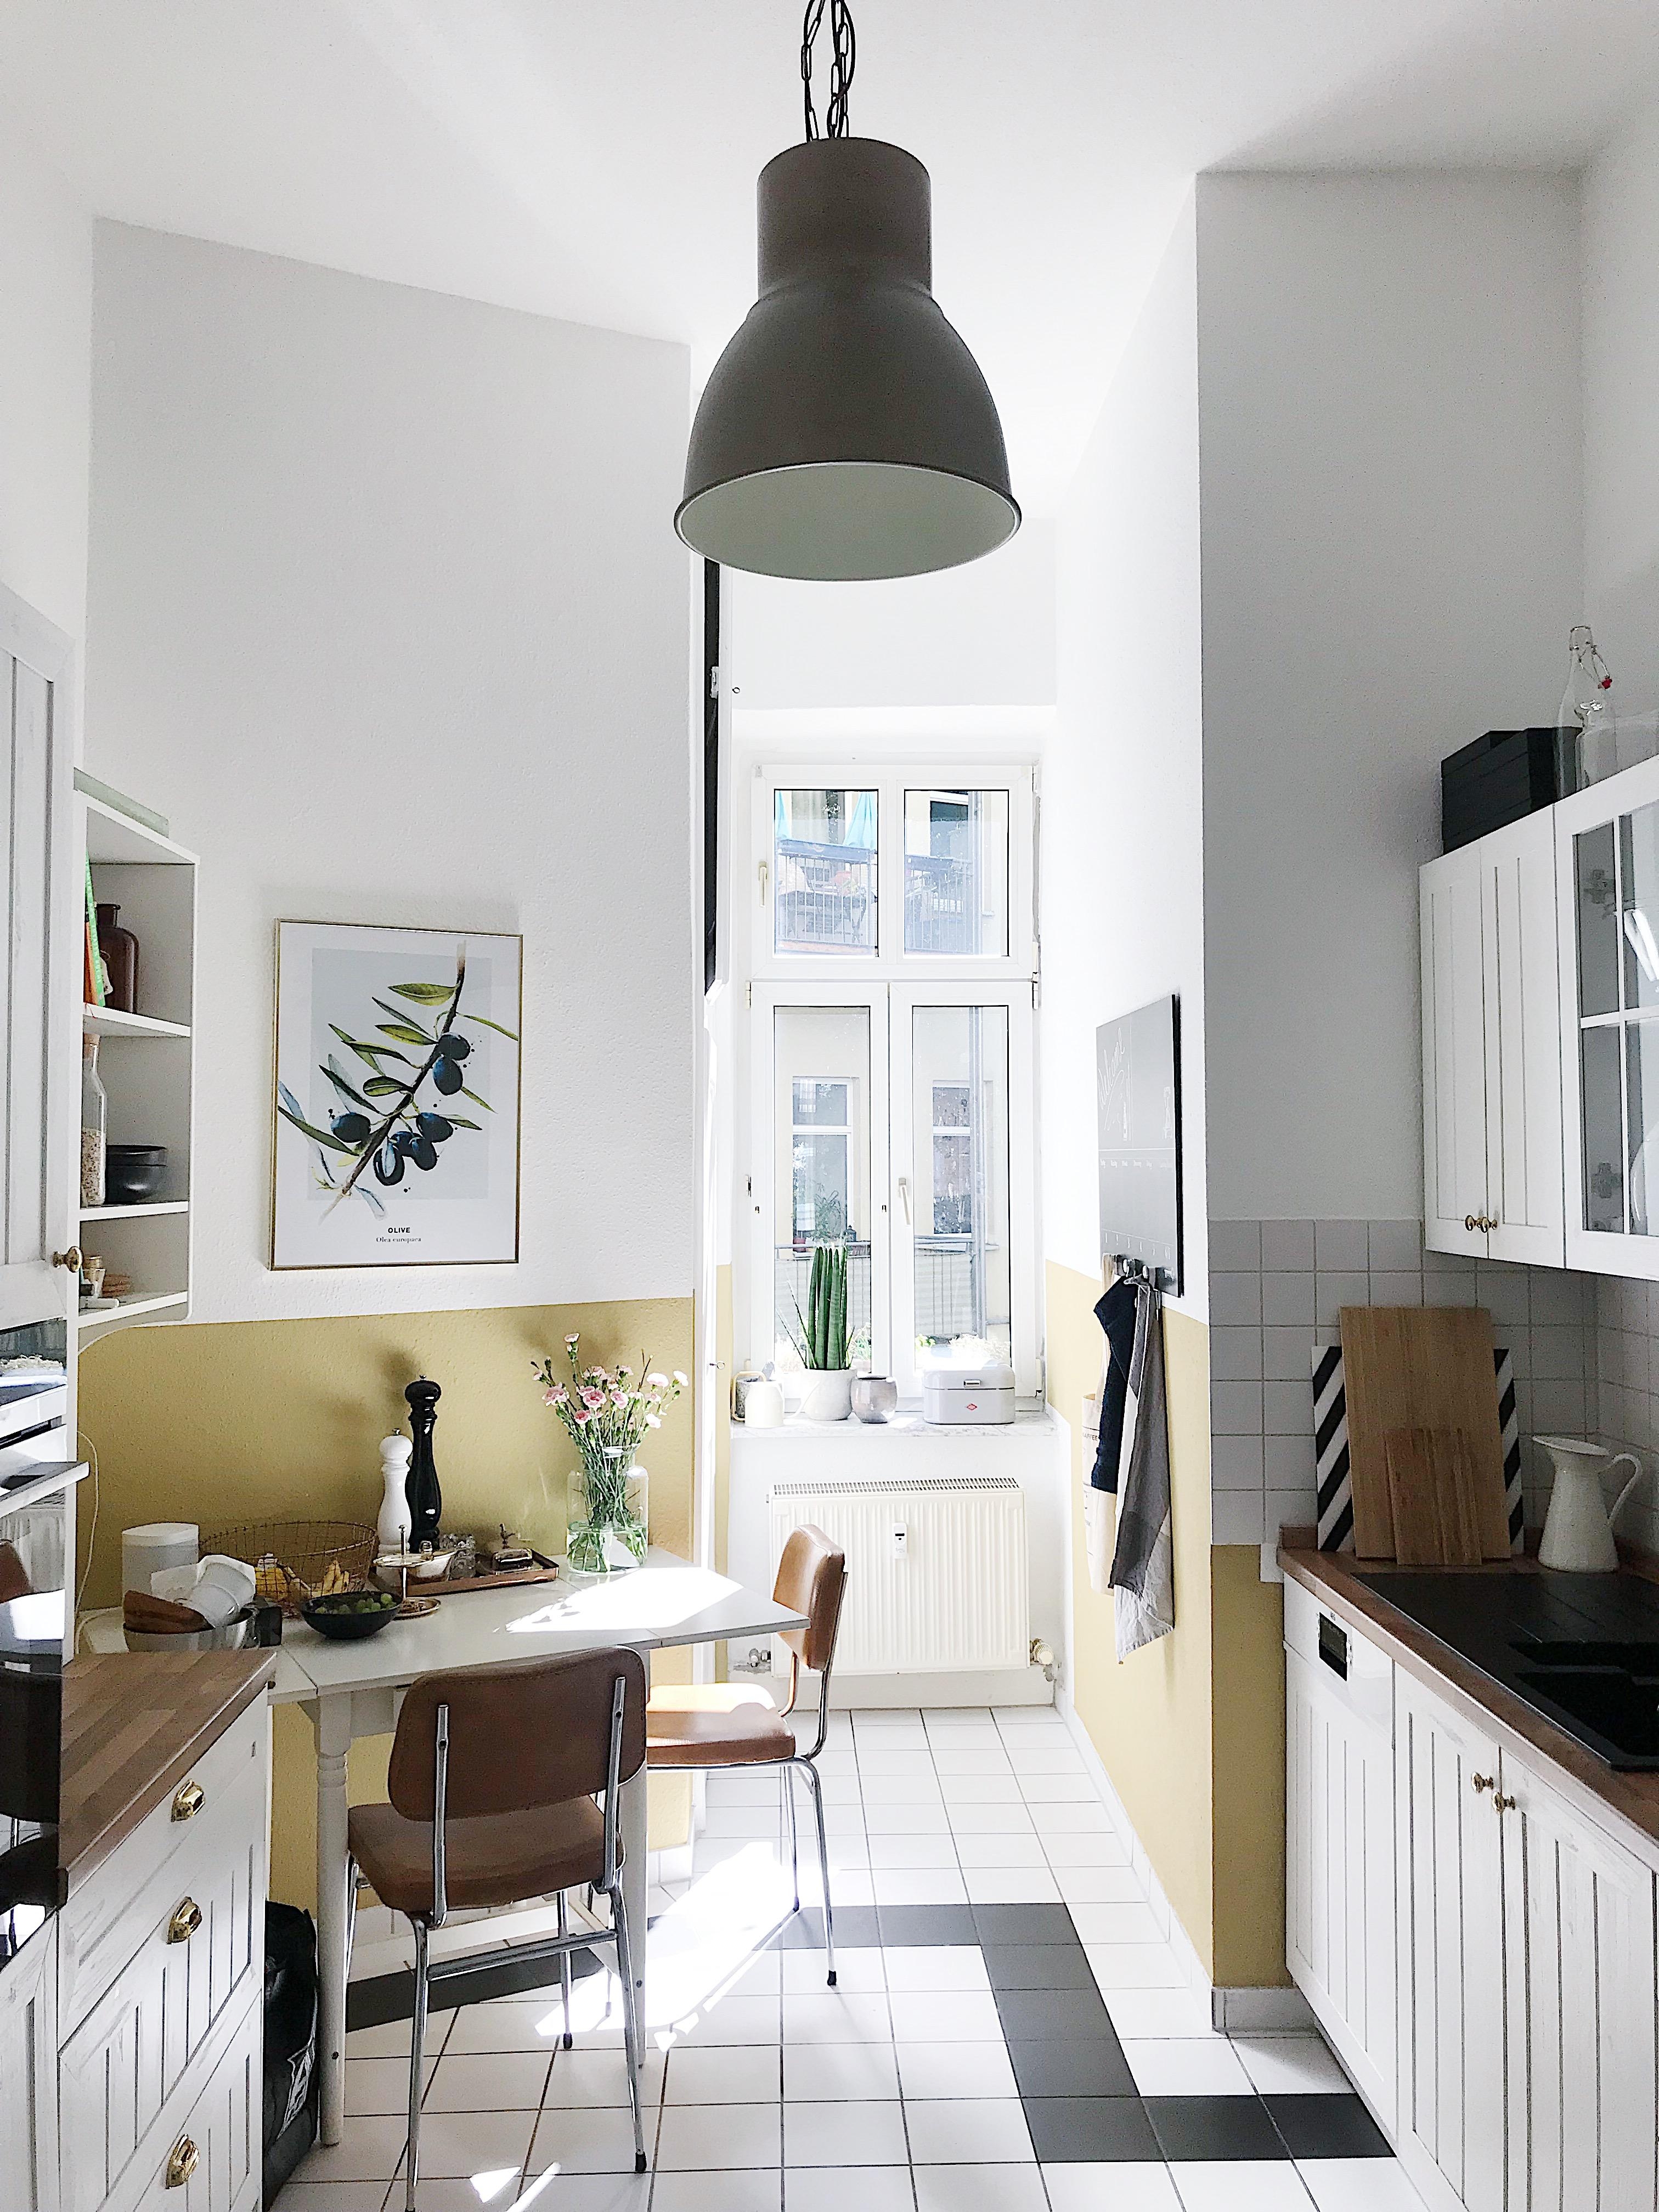 Man möge mir einen Koch zur Seite stellen... #küche #altbau #schönerwohnenfarbe #kitchen #couchliving 